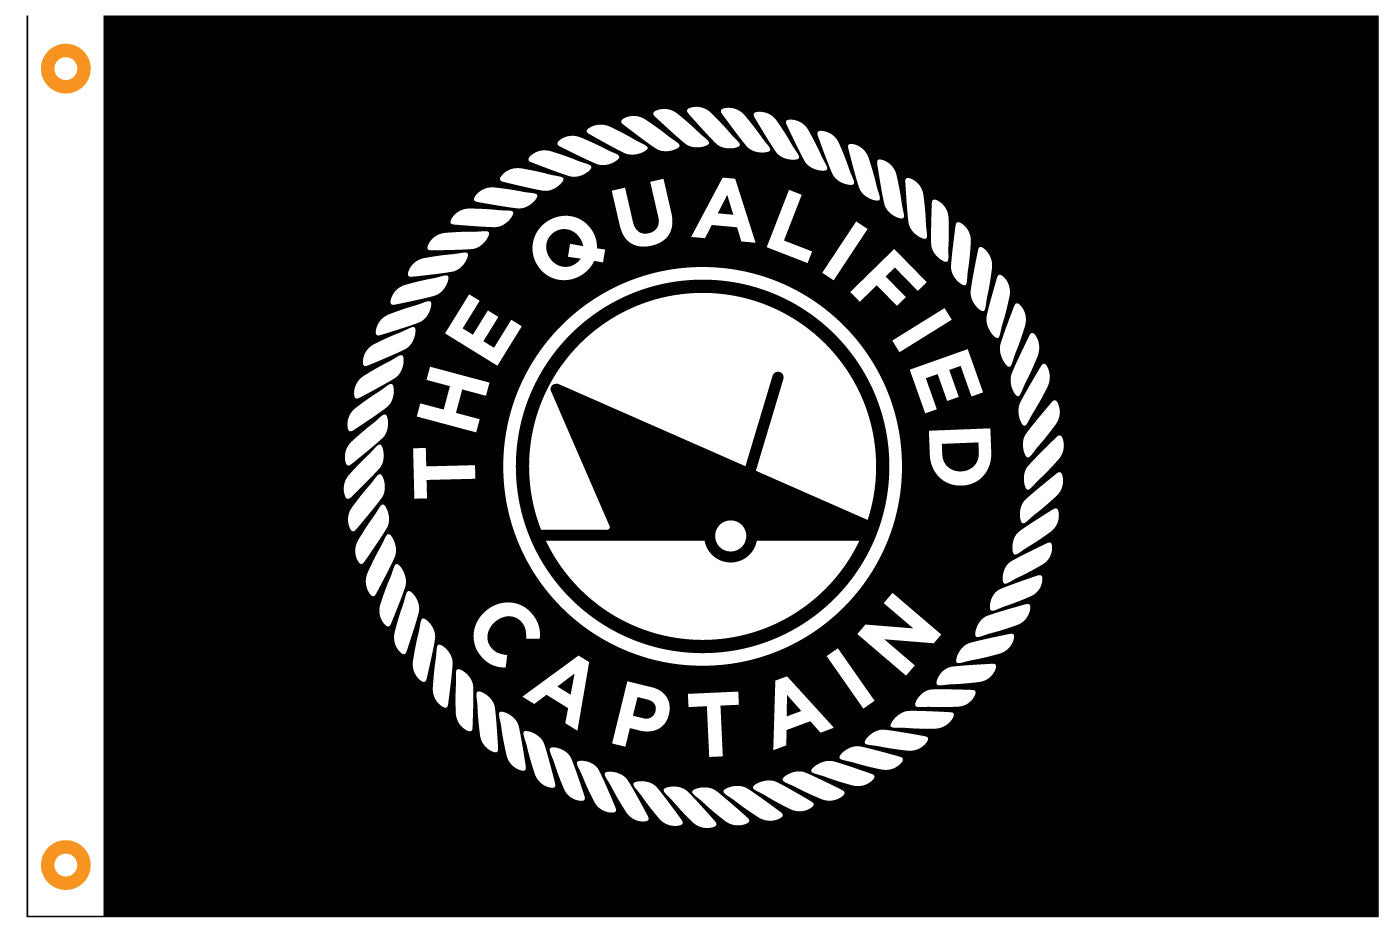 Captain logo Royalty Free Vector Image - VectorStock